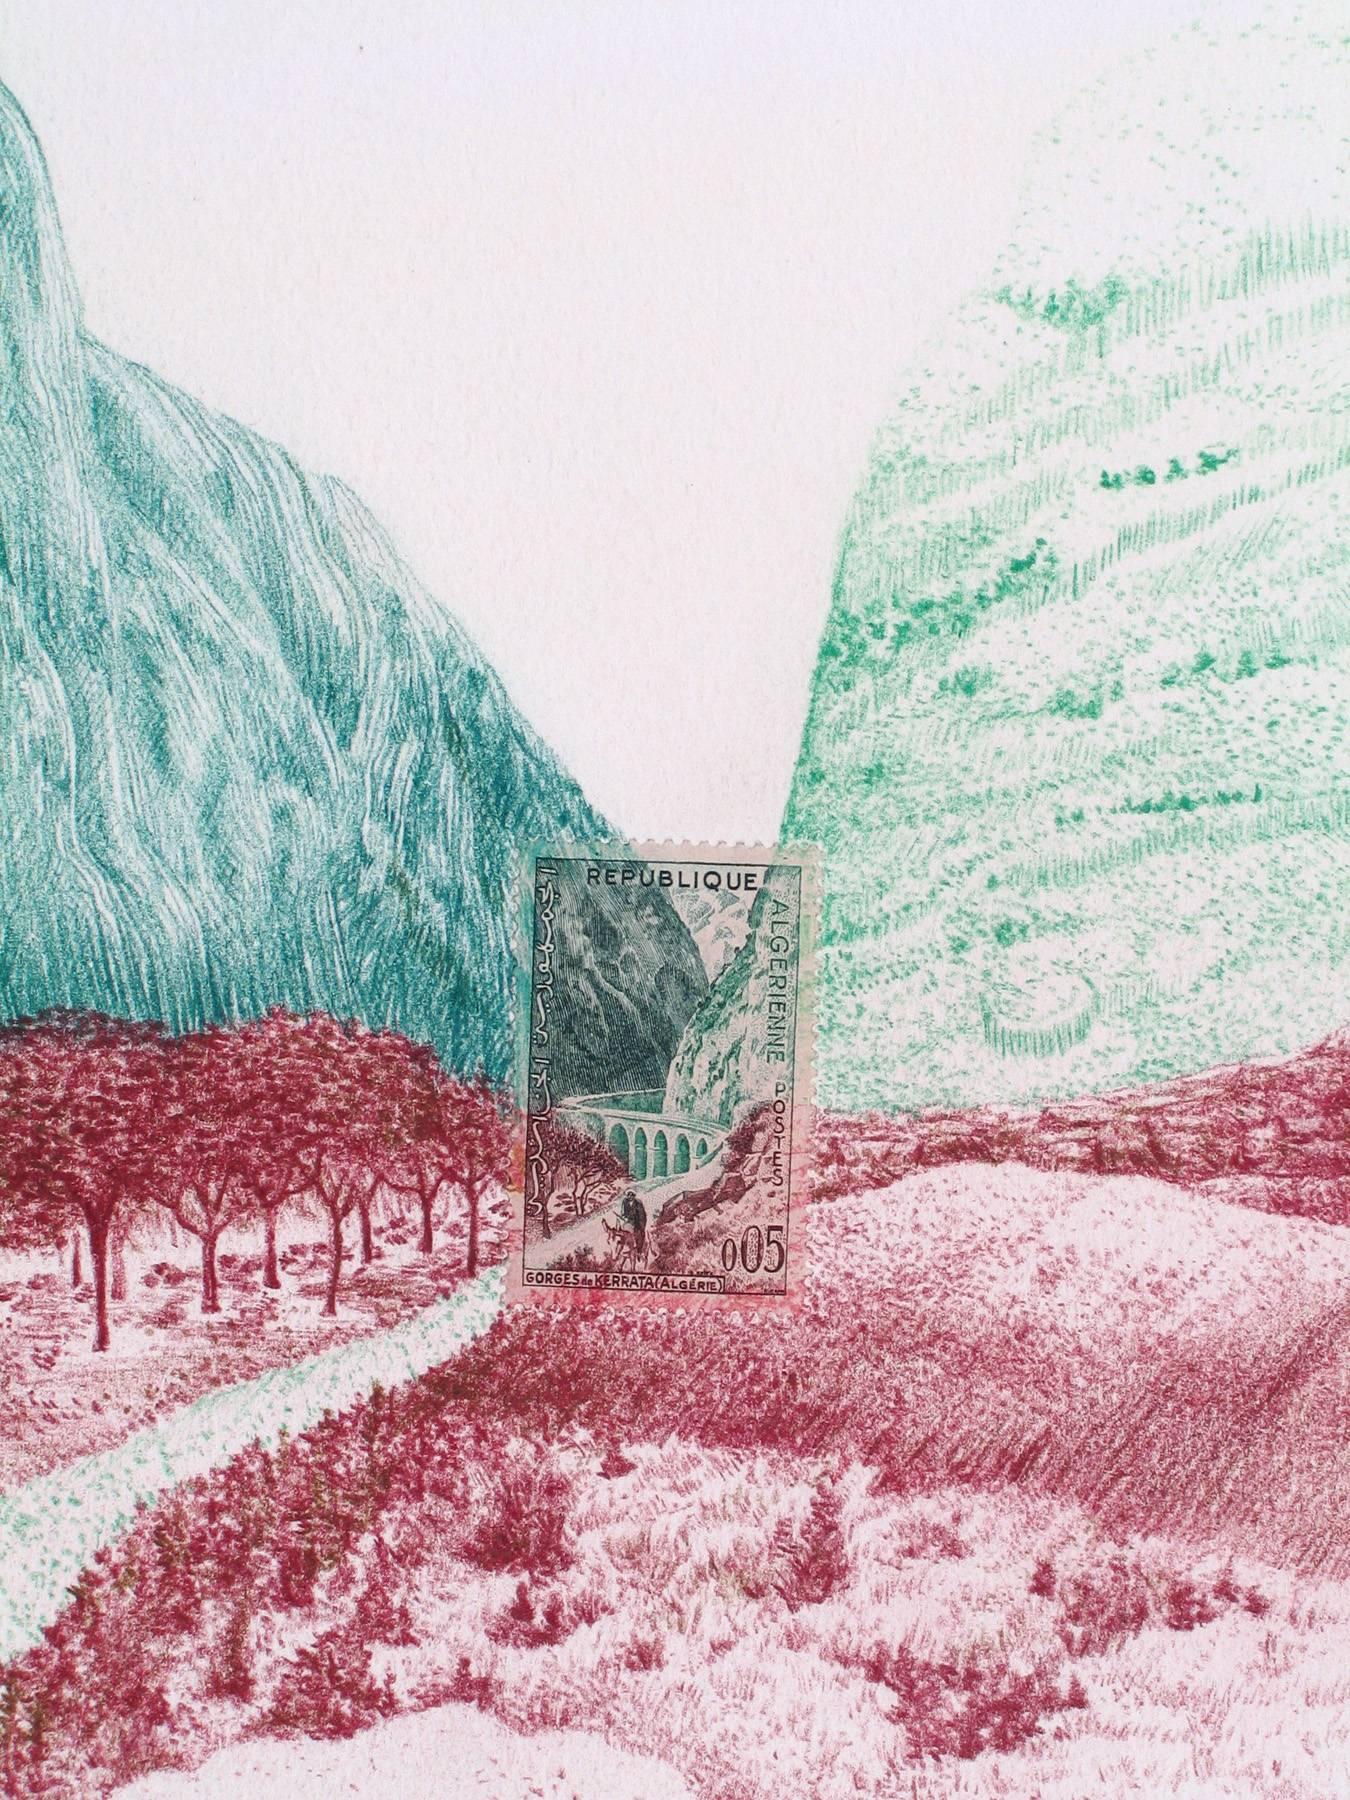 Andrea Moreau Landscape Art - Algeria, Mountain Pass: Detailed Color Pencil Drawing of Landscape & Stamp